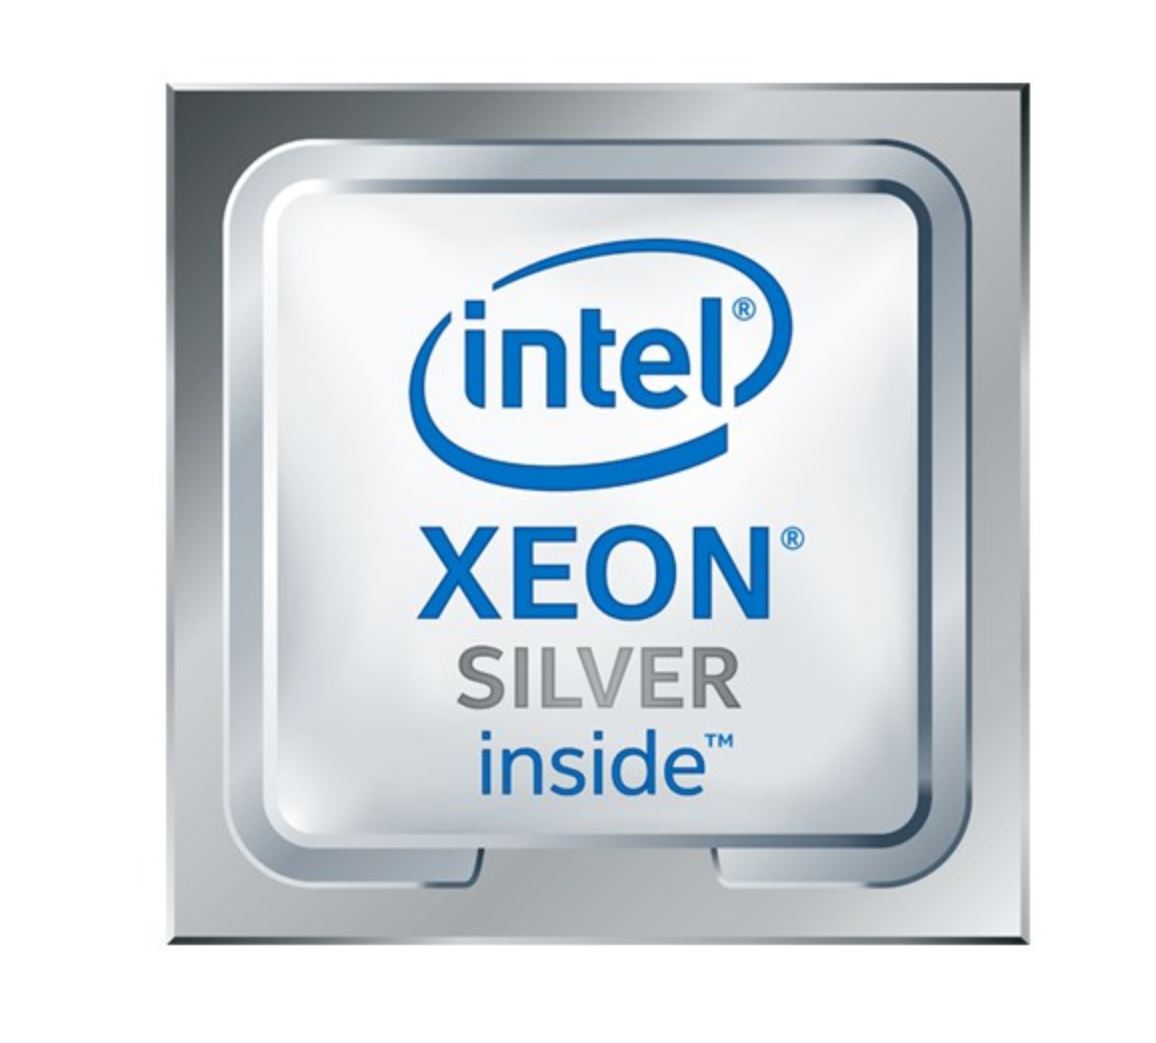 Intel® Xeon® Silver 4208 CPU 2.1GHz/8-Core/LGA3647/11MB/